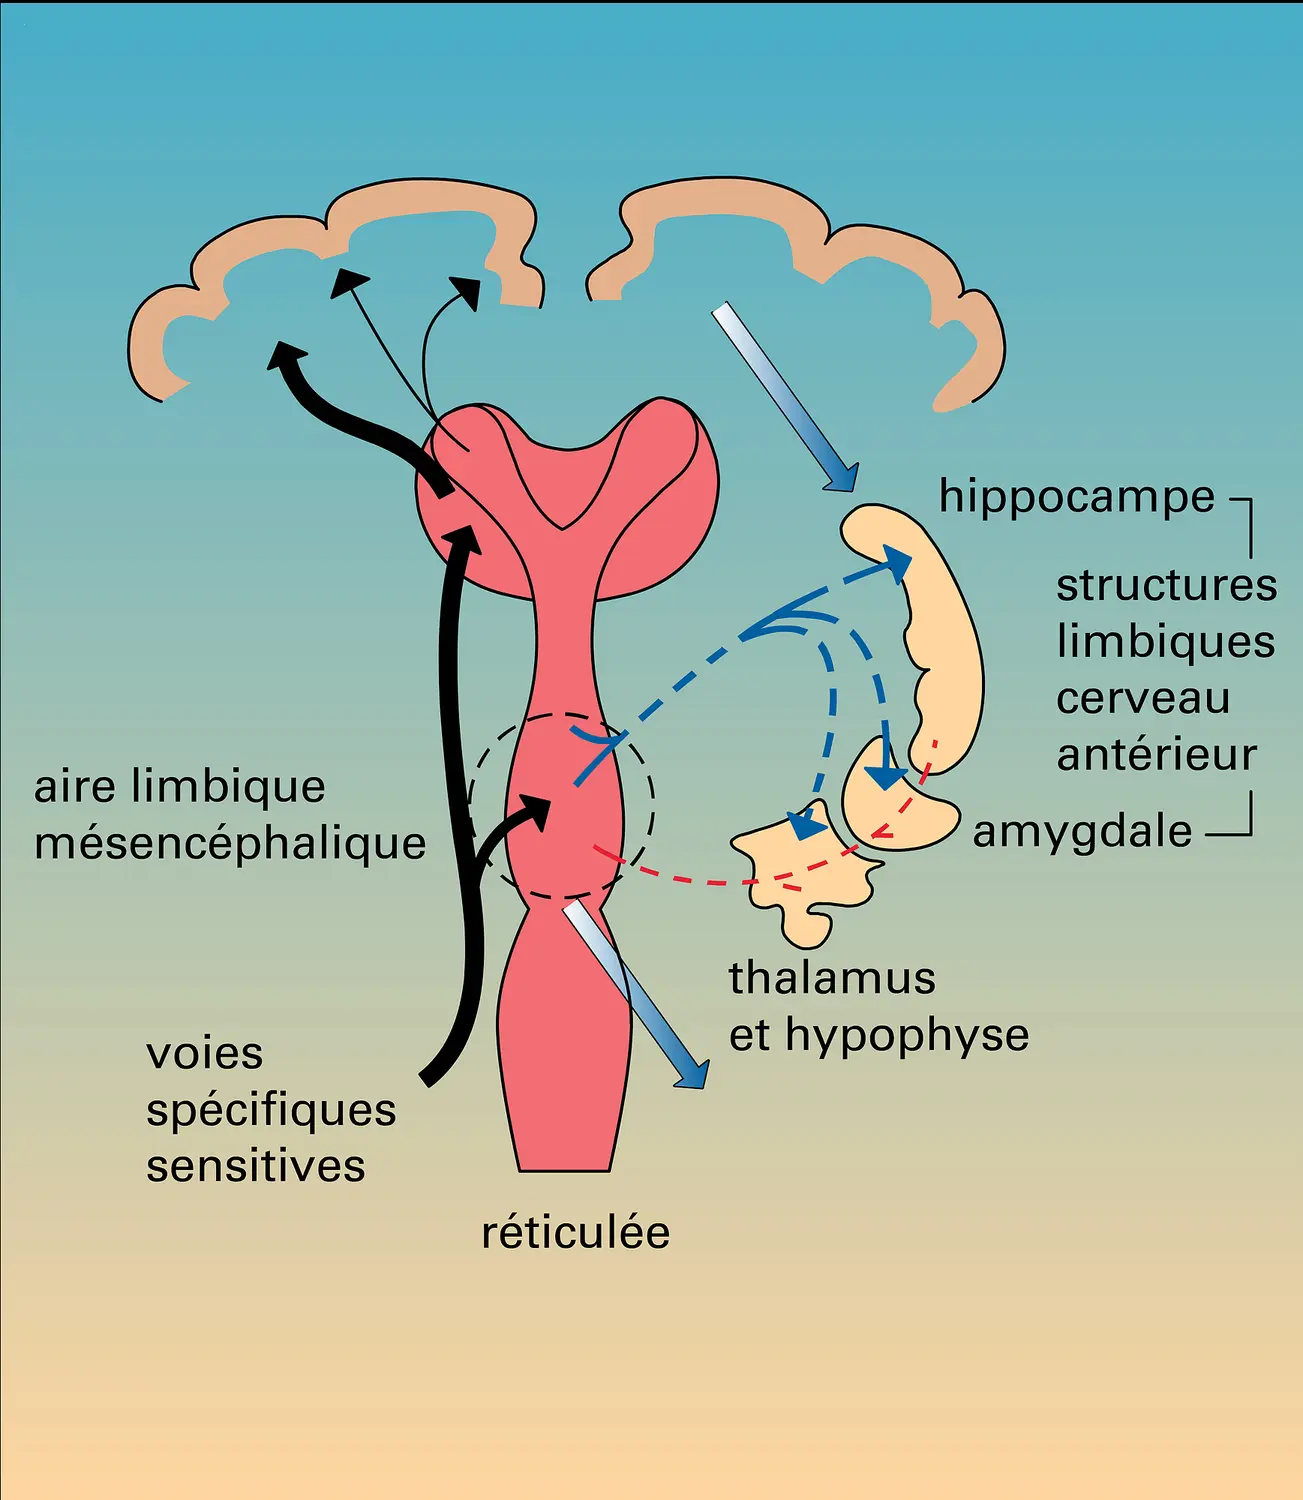 Hypothalamus : connexions avec l'aire limbique